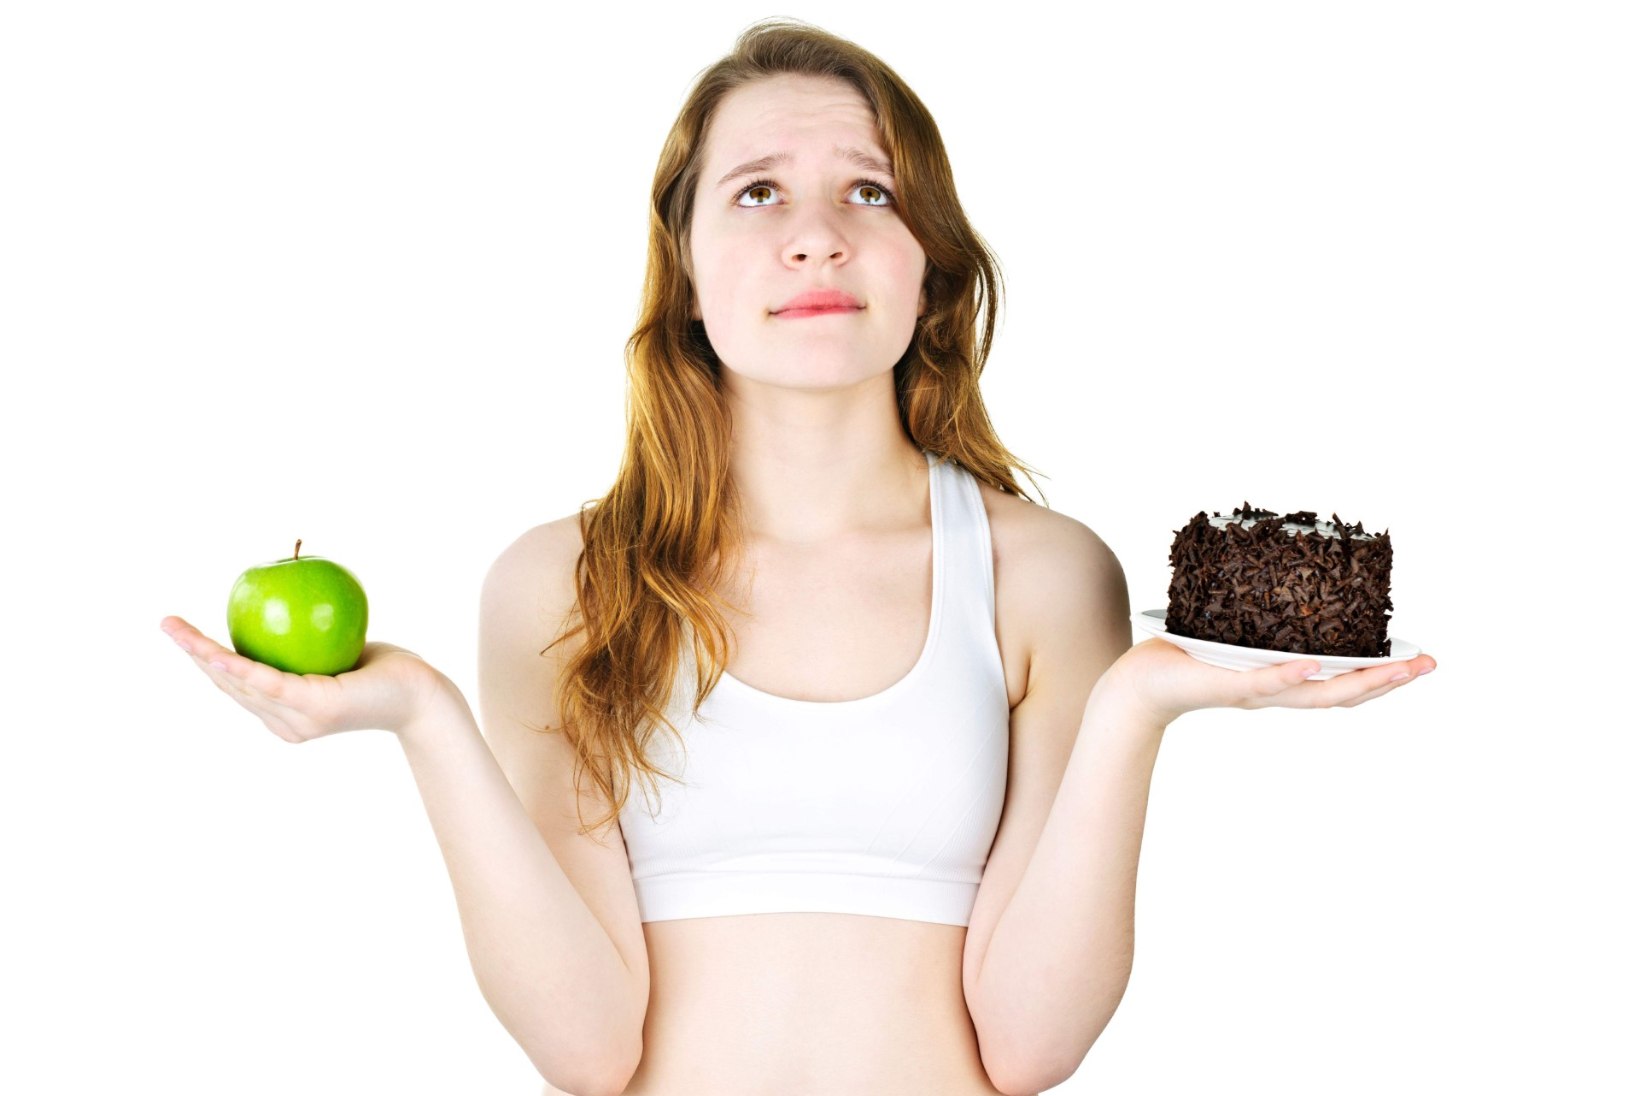 VÕTAN KAALUST ALLA: kuidas tõhusalt dieeti pidama hakata?